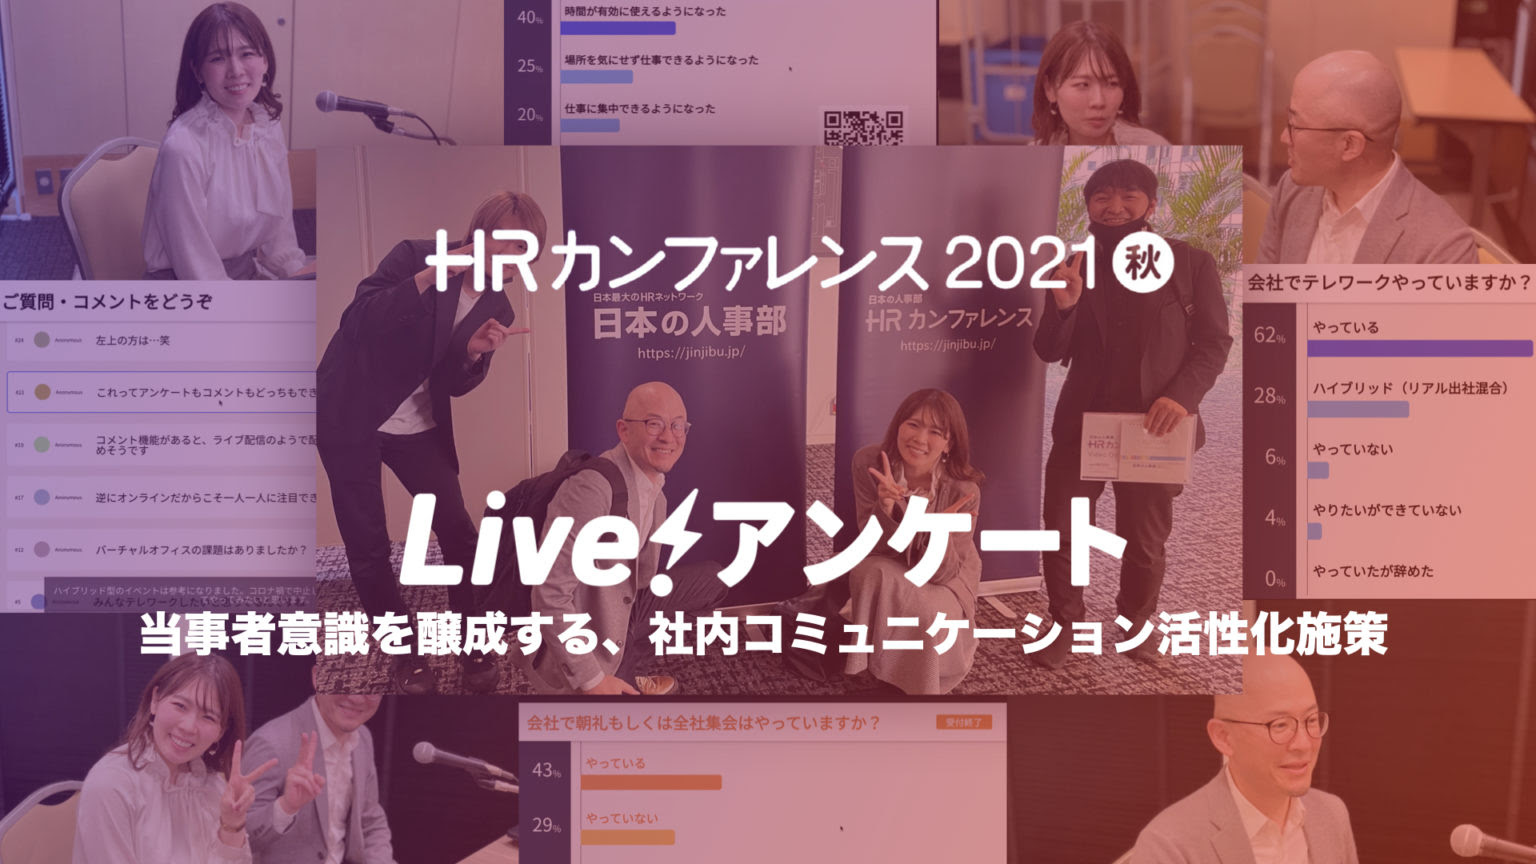 HRカンファレンス2021秋で“Live!アンケート”を活用した登壇をさせて頂きました！